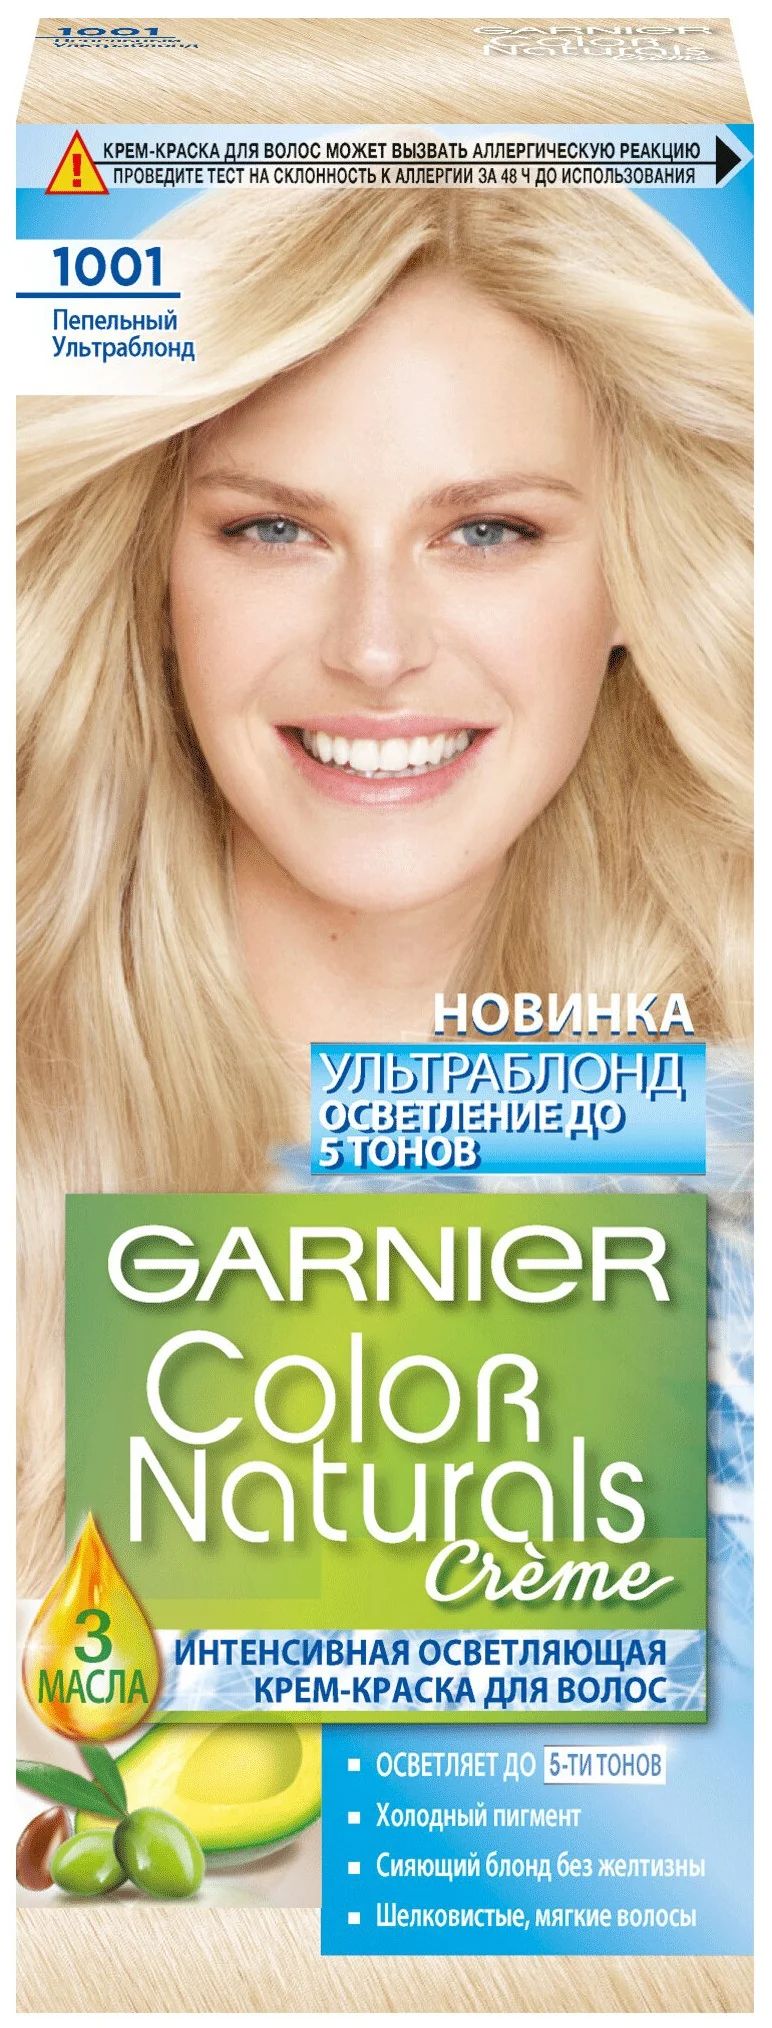 Garnier Color naturals краска 1002 жемчужный Ультраблонд